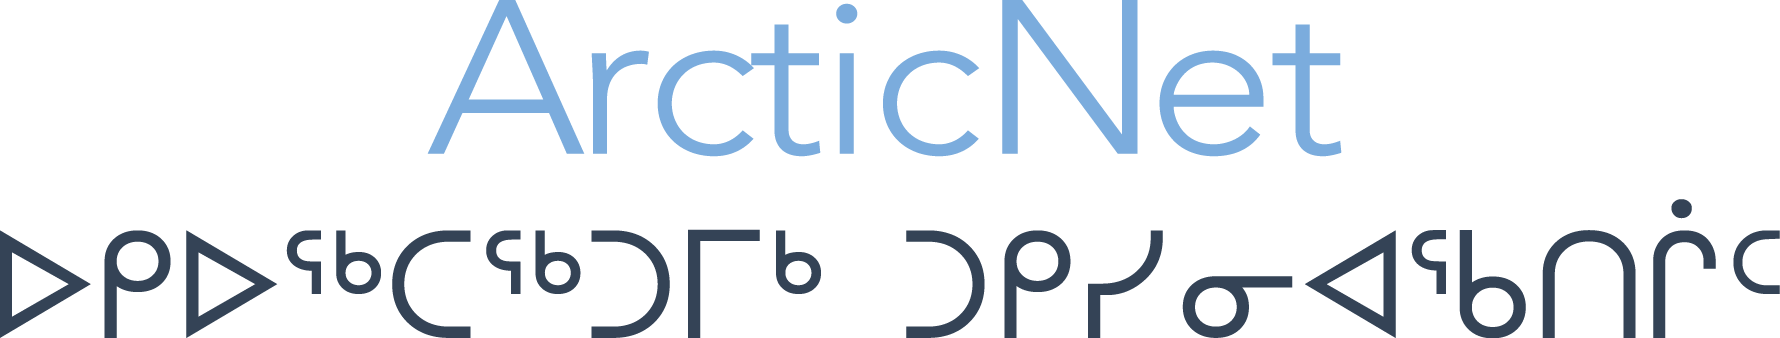 ArcticNet logo